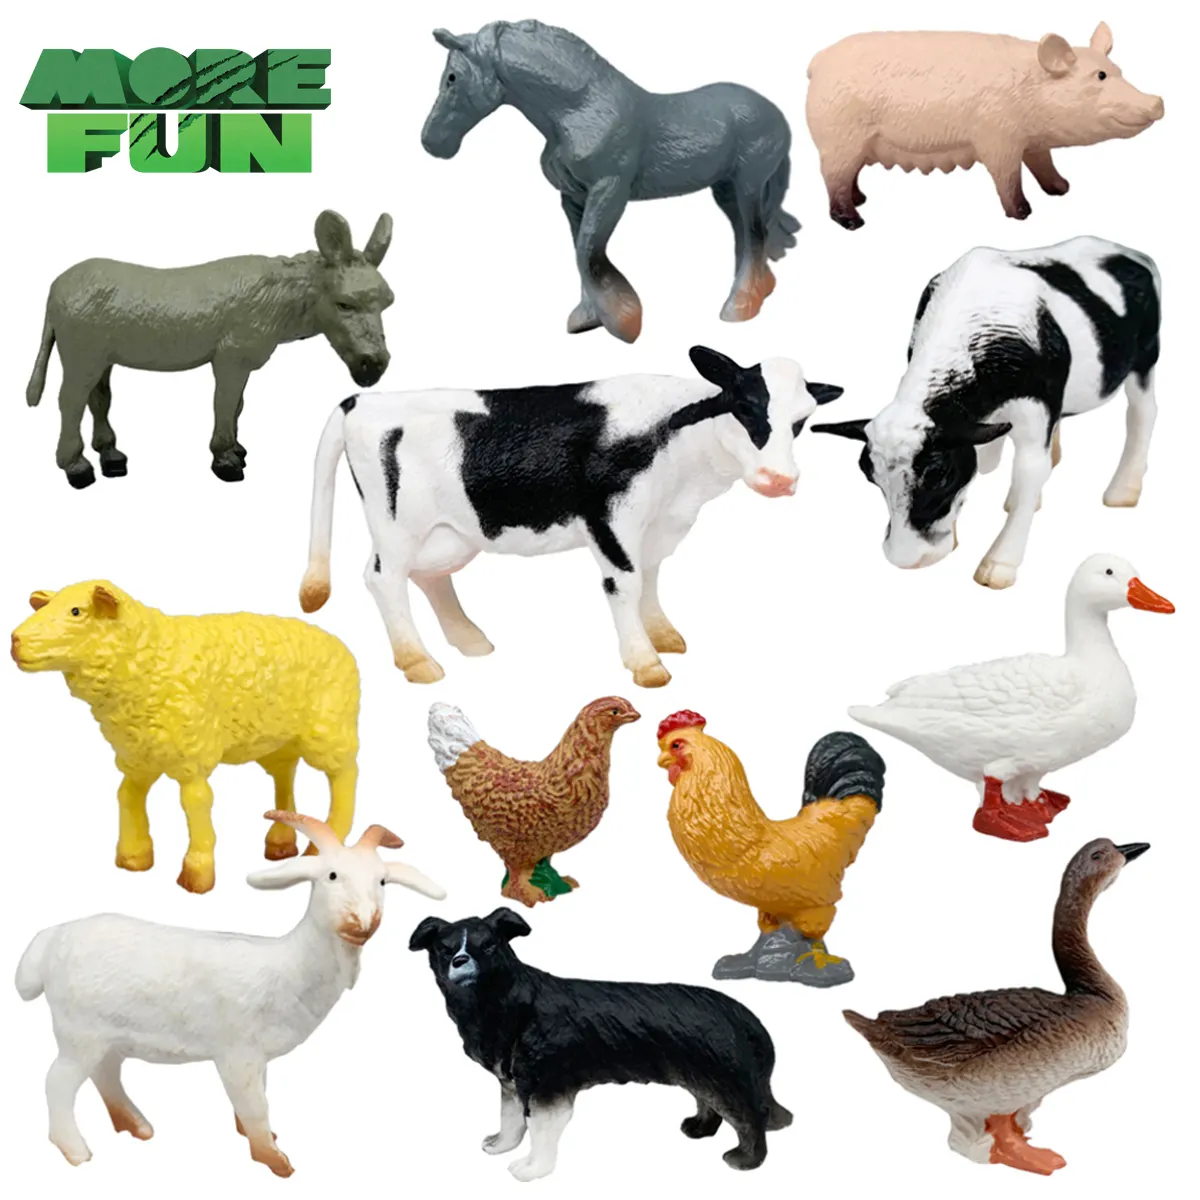 MINI figuritas de animales de PVC con diseño de Fram, juguetes de animales respetuosos con el medio ambiente, 12 unidades